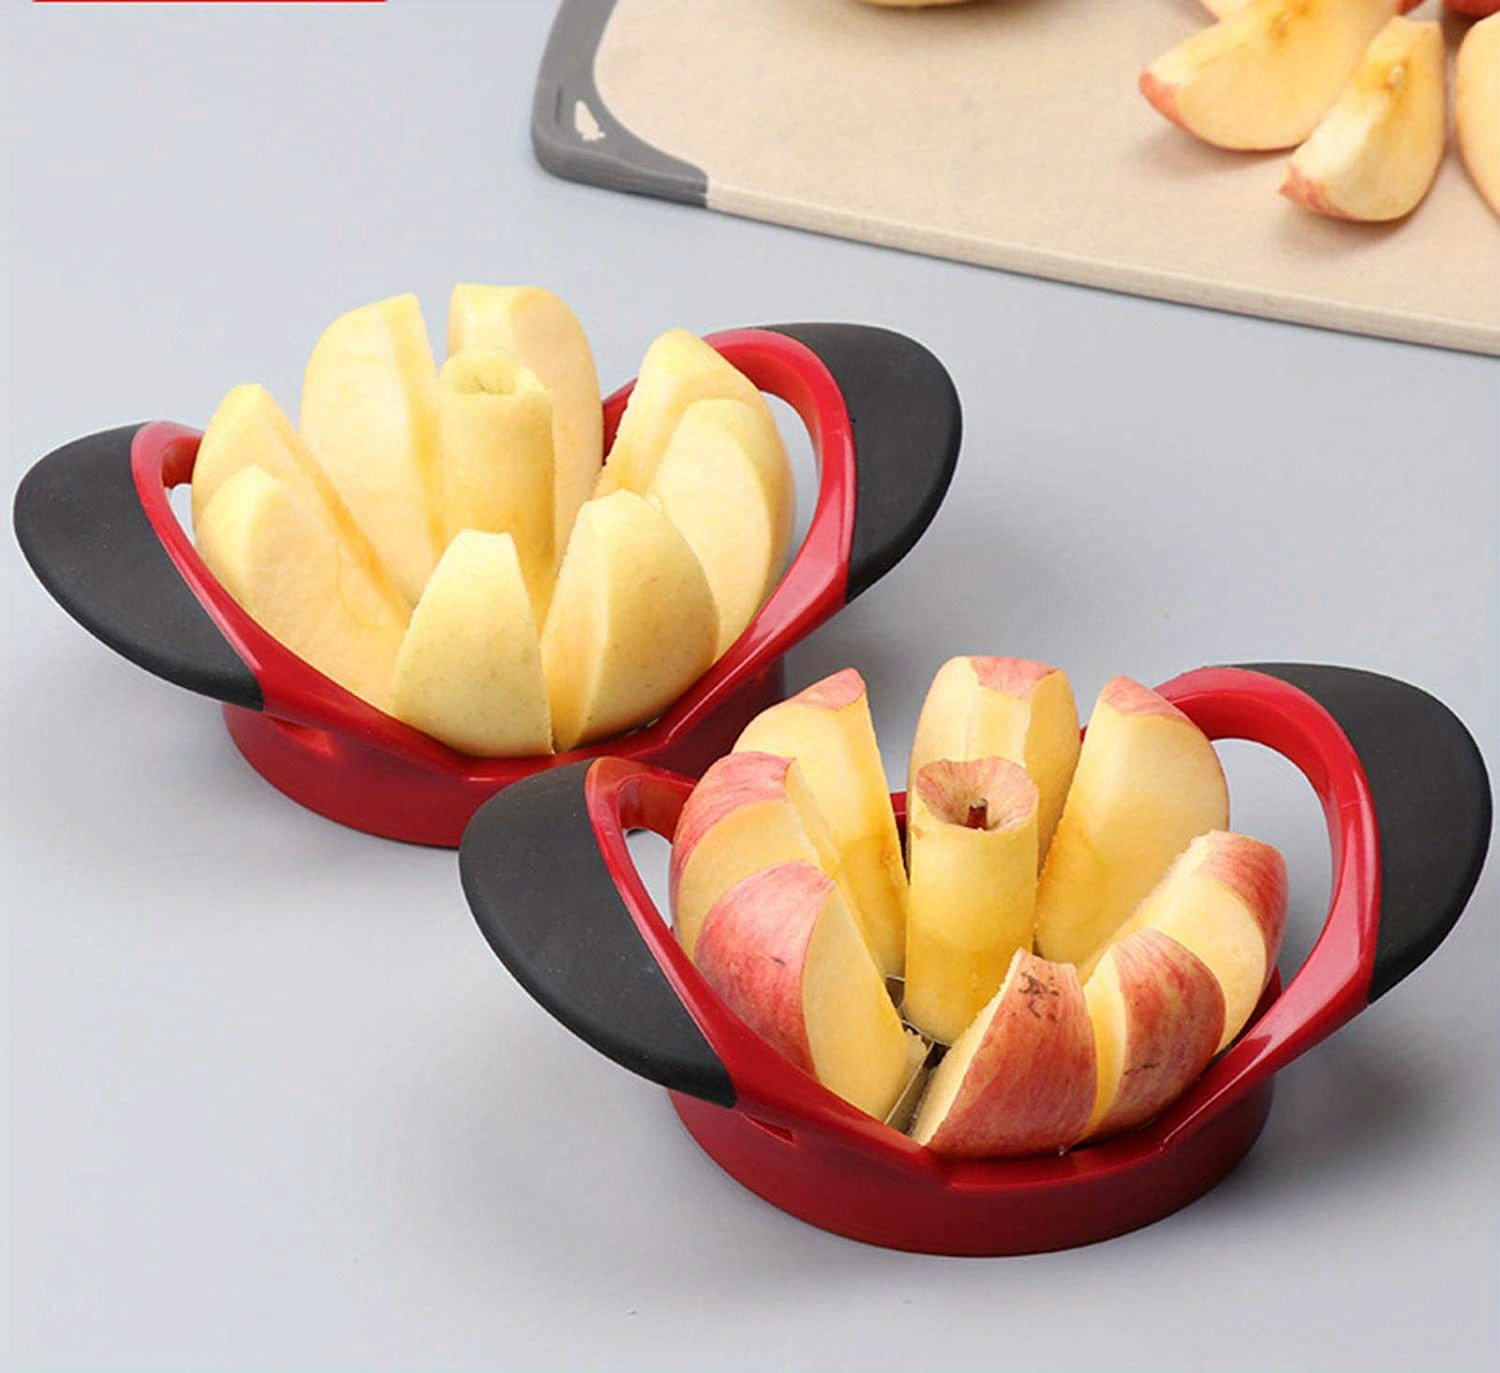 rebanador de manzanas, cortador de manzanas, versión mejorada del  descorazonador Descorazonador y divisor de manzanas grande de 8 hojas, el  divisor puede cortar hasta 3.5 pulgadas de manzanas Ormromra WMPH-499-1